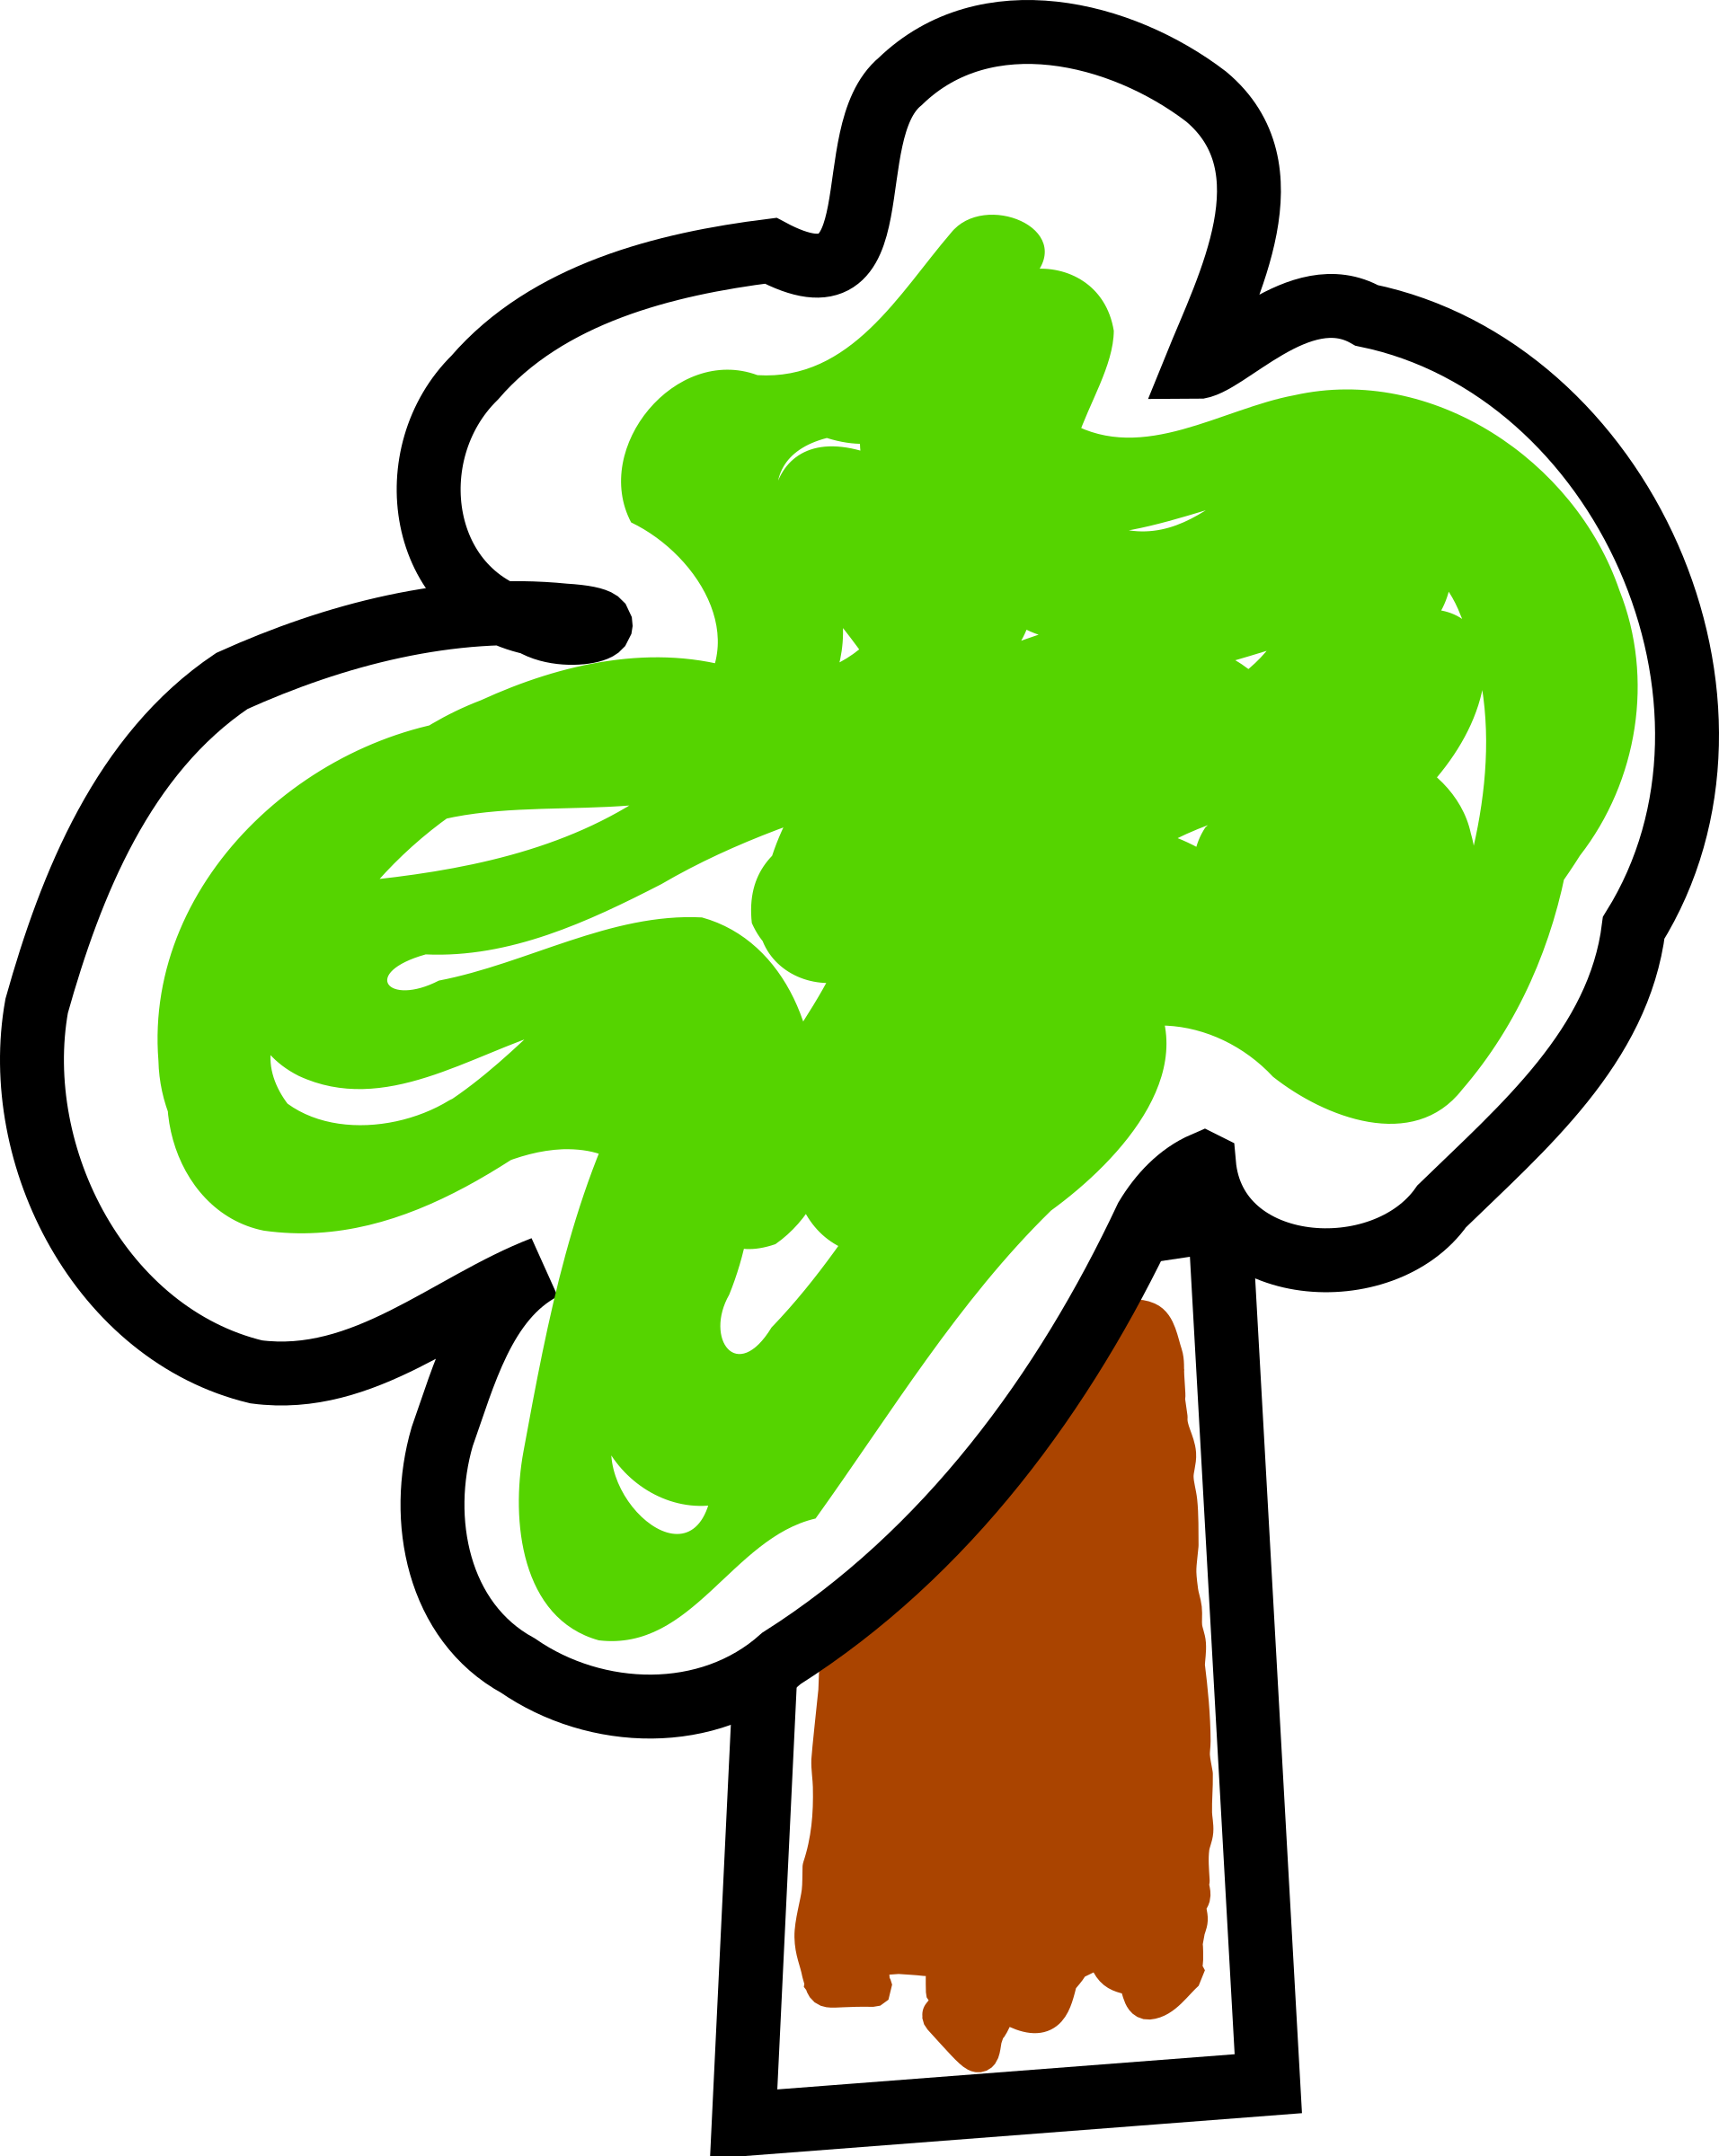 Tree-arbol 02 SVG Clip arts